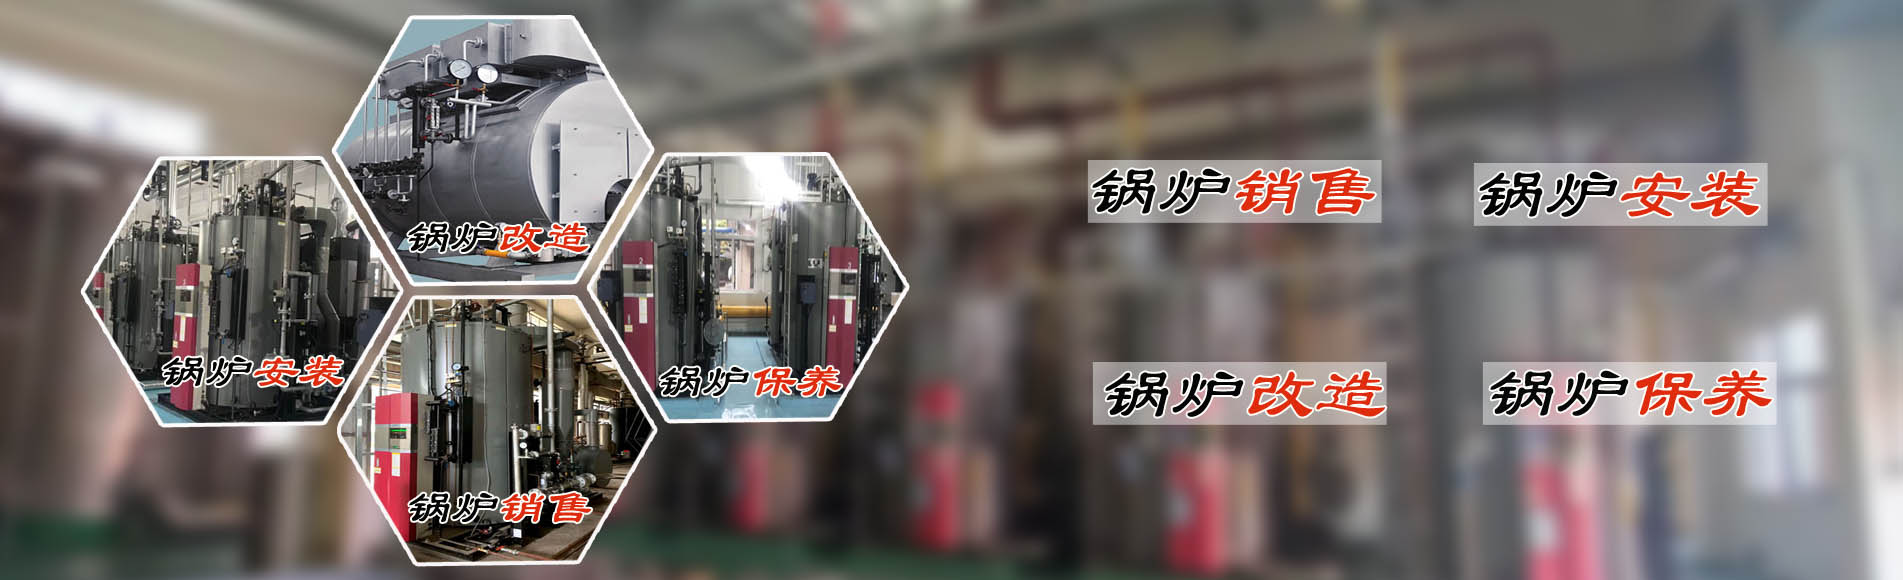 广州希诺机电提供蒸汽节能锅炉、热水锅炉安装销售、锅炉改造、锅炉维护保养服务。